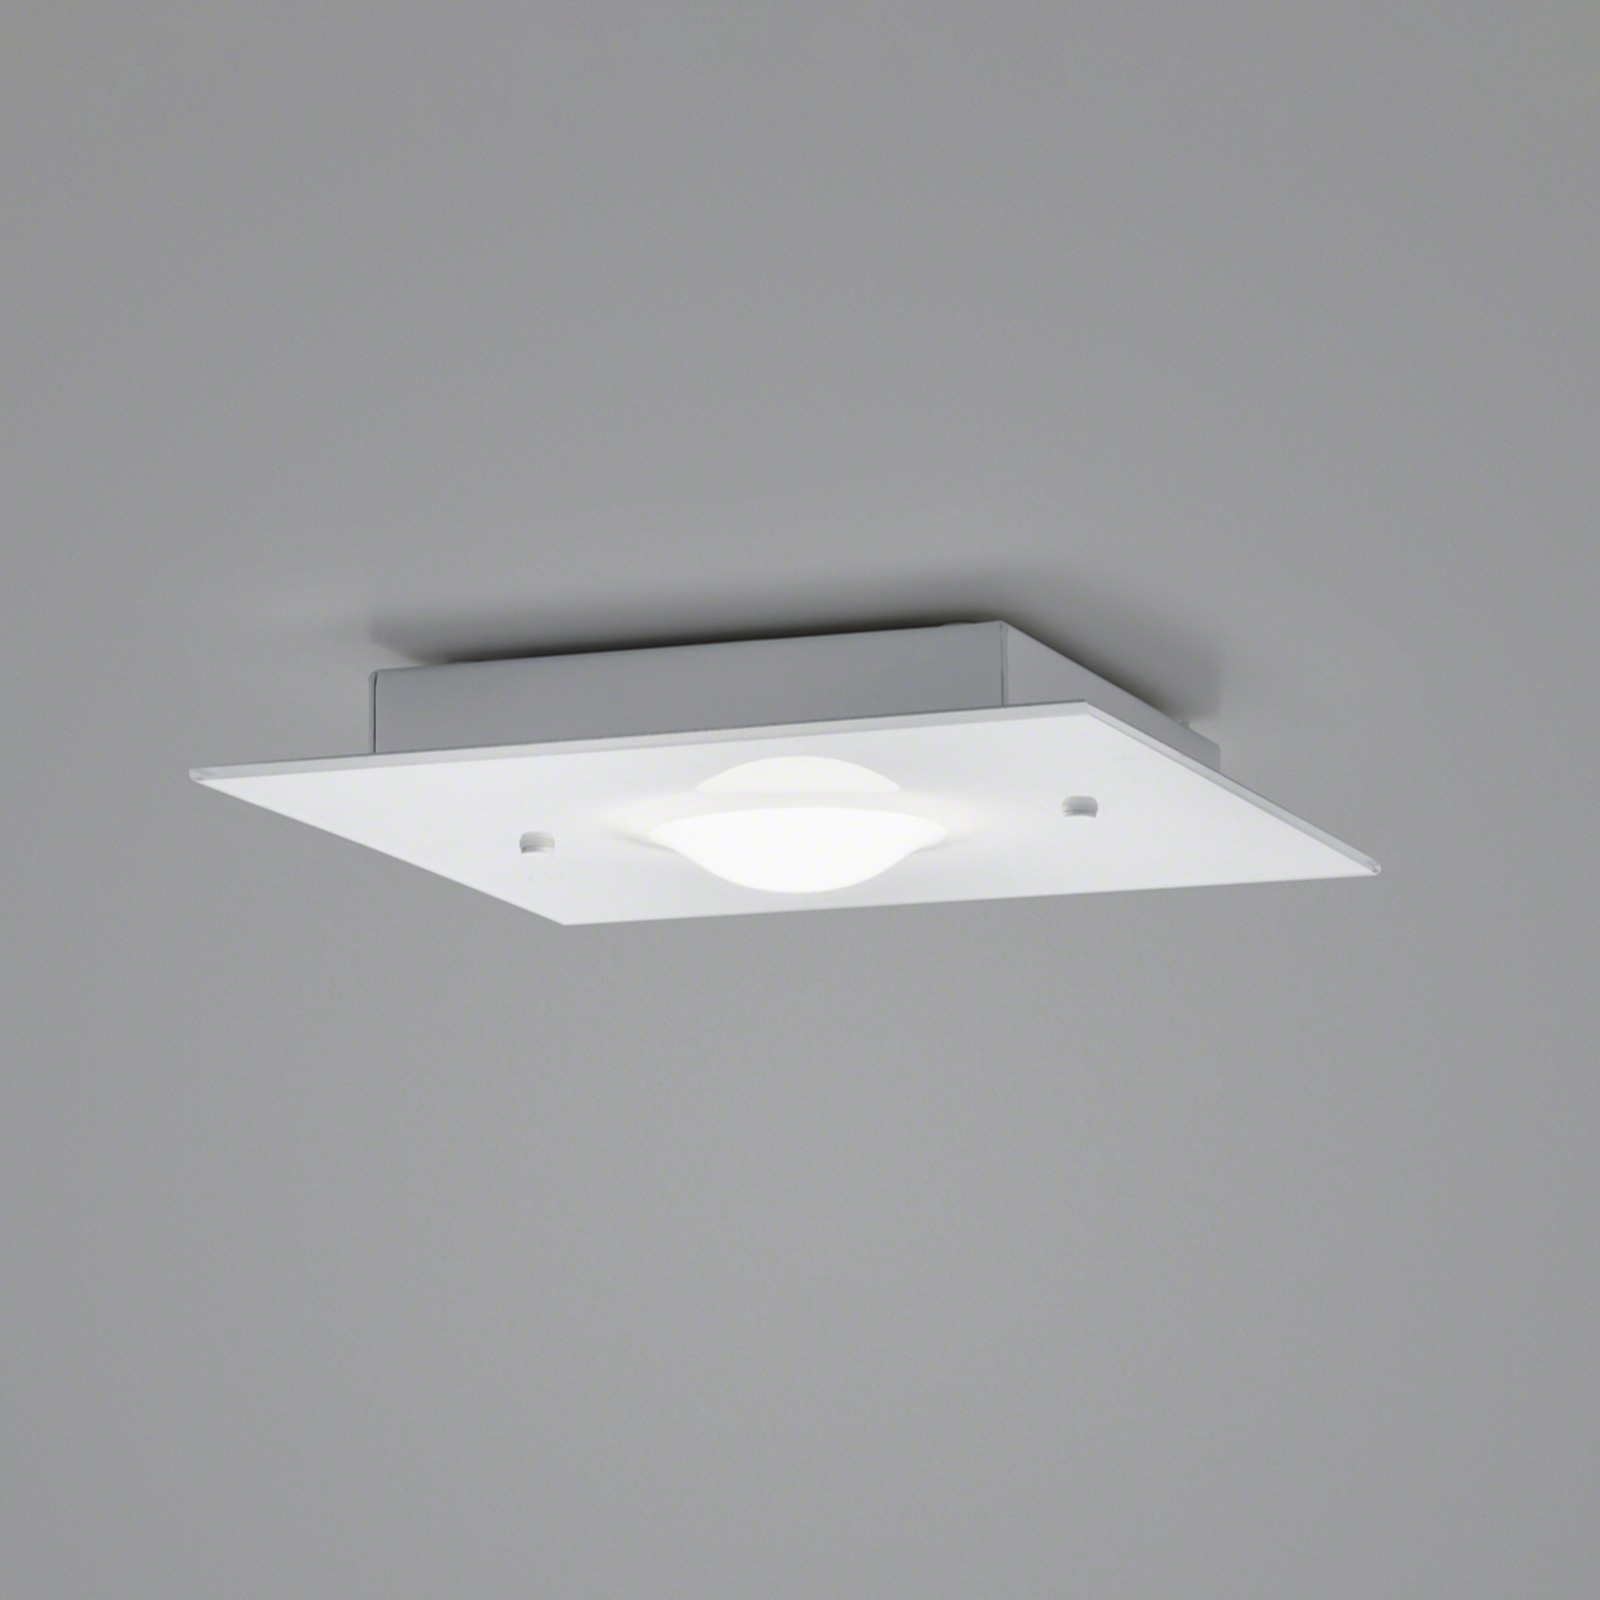 Helestra Nomi LED ceiling light 23x23cm dim white